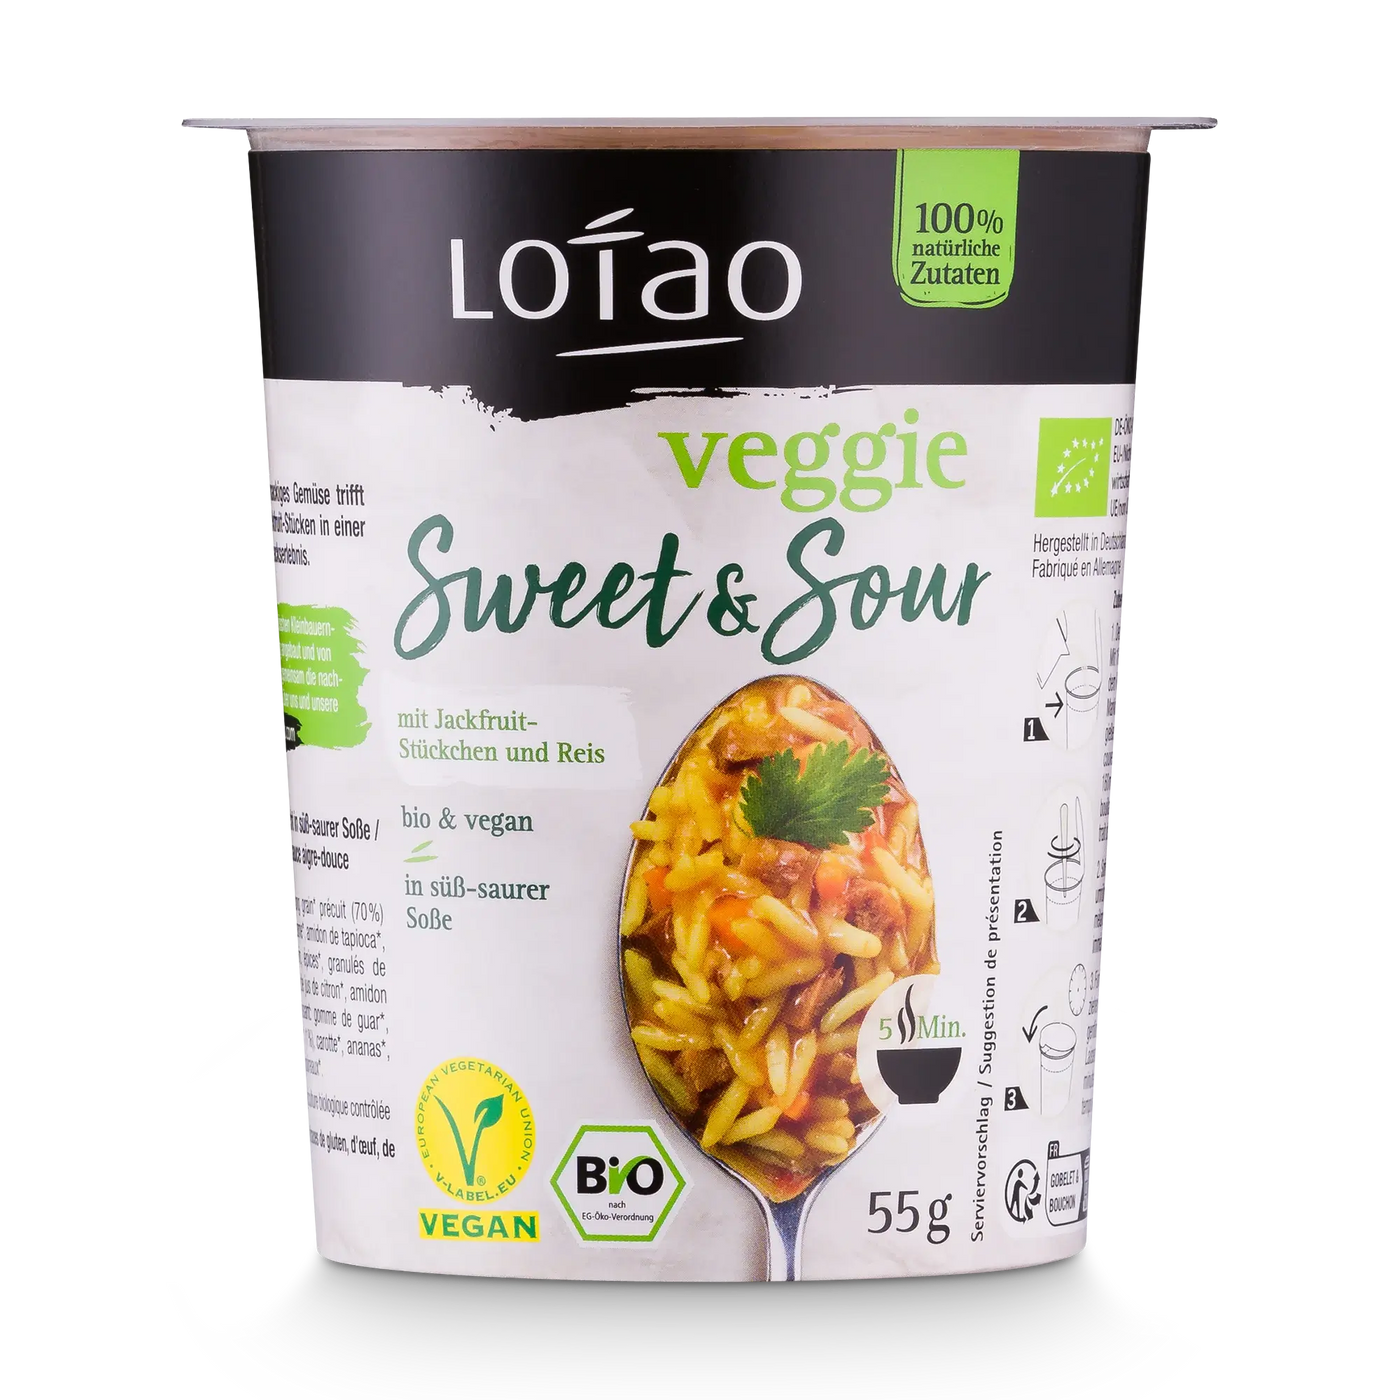 Bio-veganes Reisgericht von Lotao mit leckerer süß-sauer Soße, natürlichen Zutaten und ohne Geschmacksverstärker im Becher von vorne